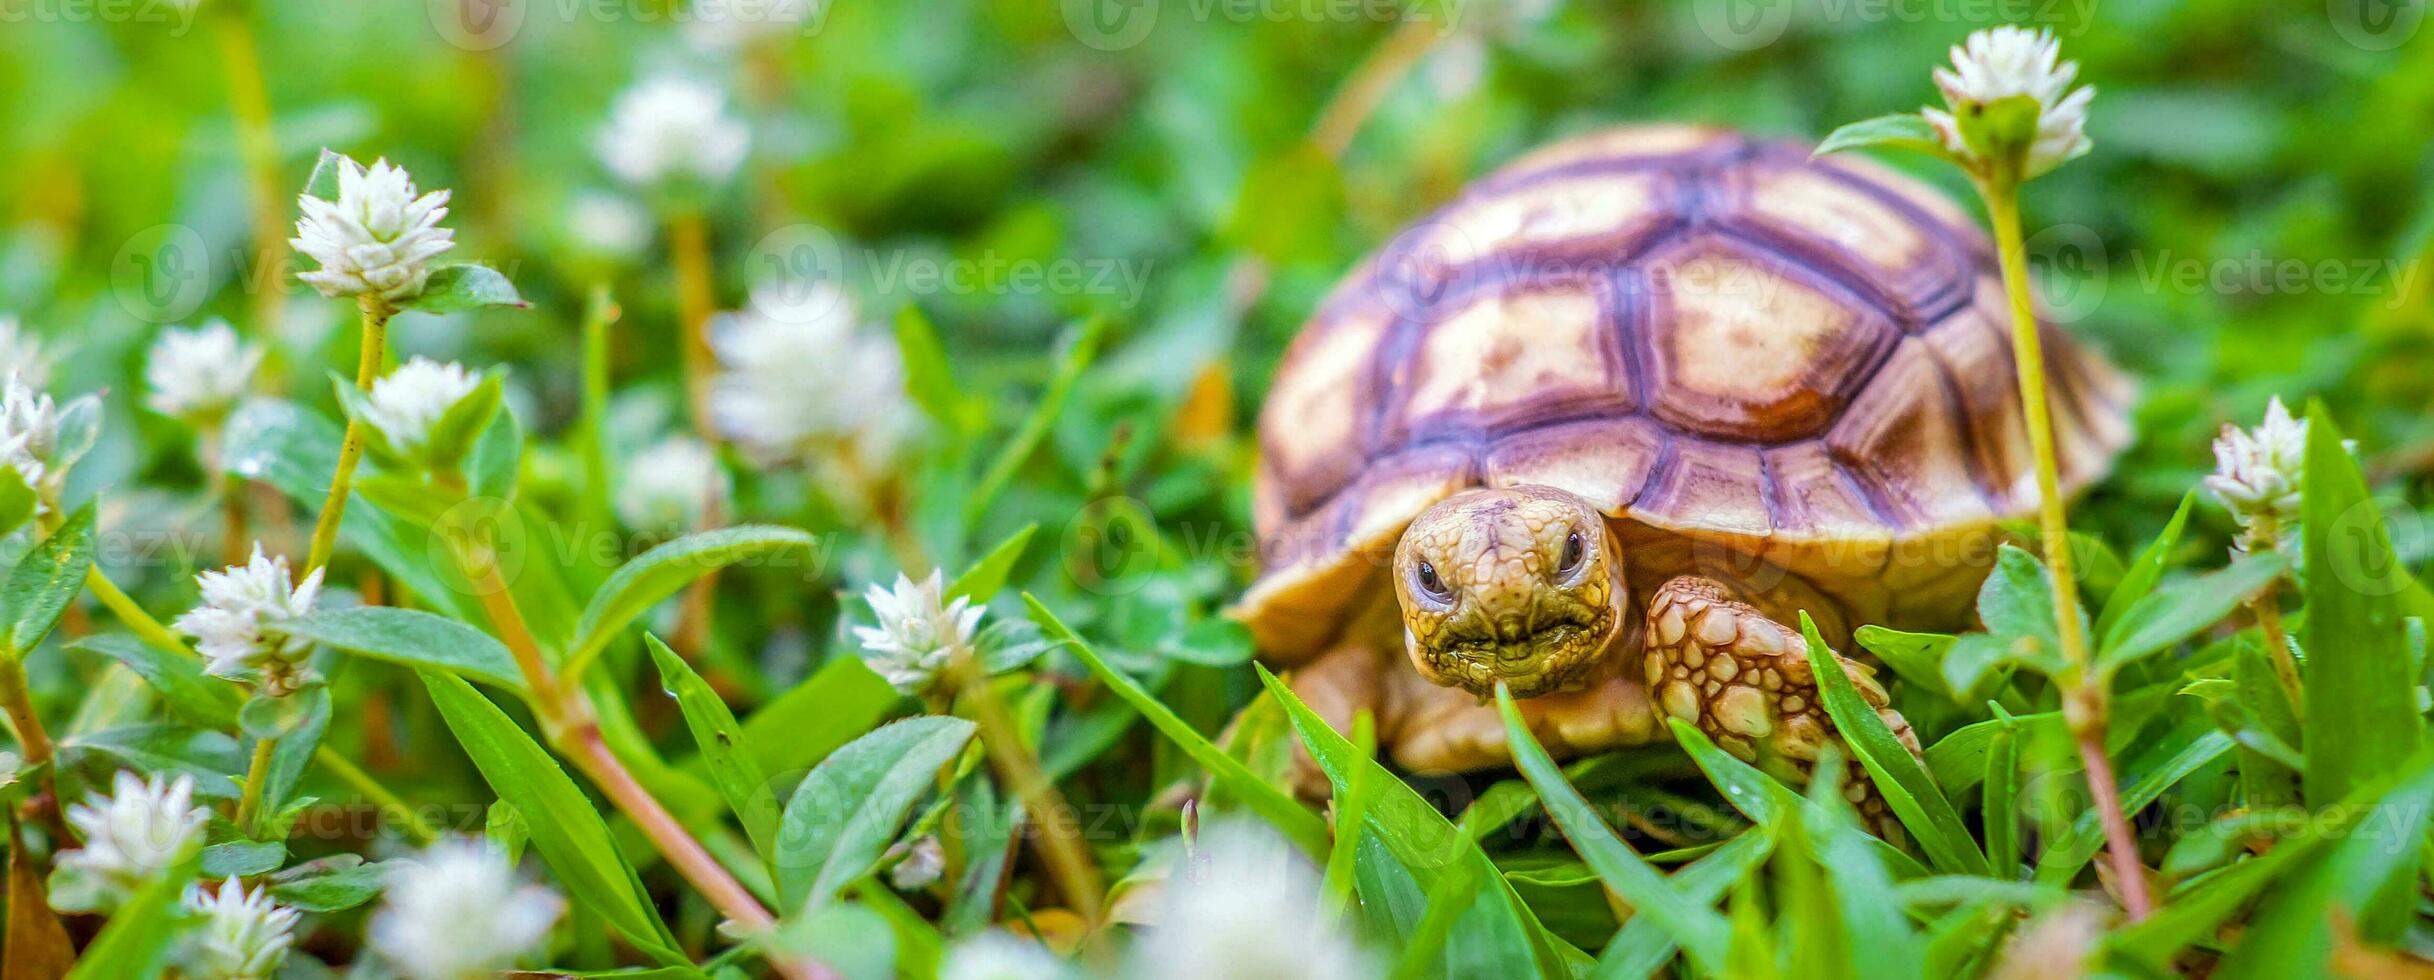 stänga upp av sulcata sköldpadda eller afrikansk sporrade sköldpadda klassificerad som en stor sköldpadda i natur, skön bebis afrikansk sporre sköldpaddor foto